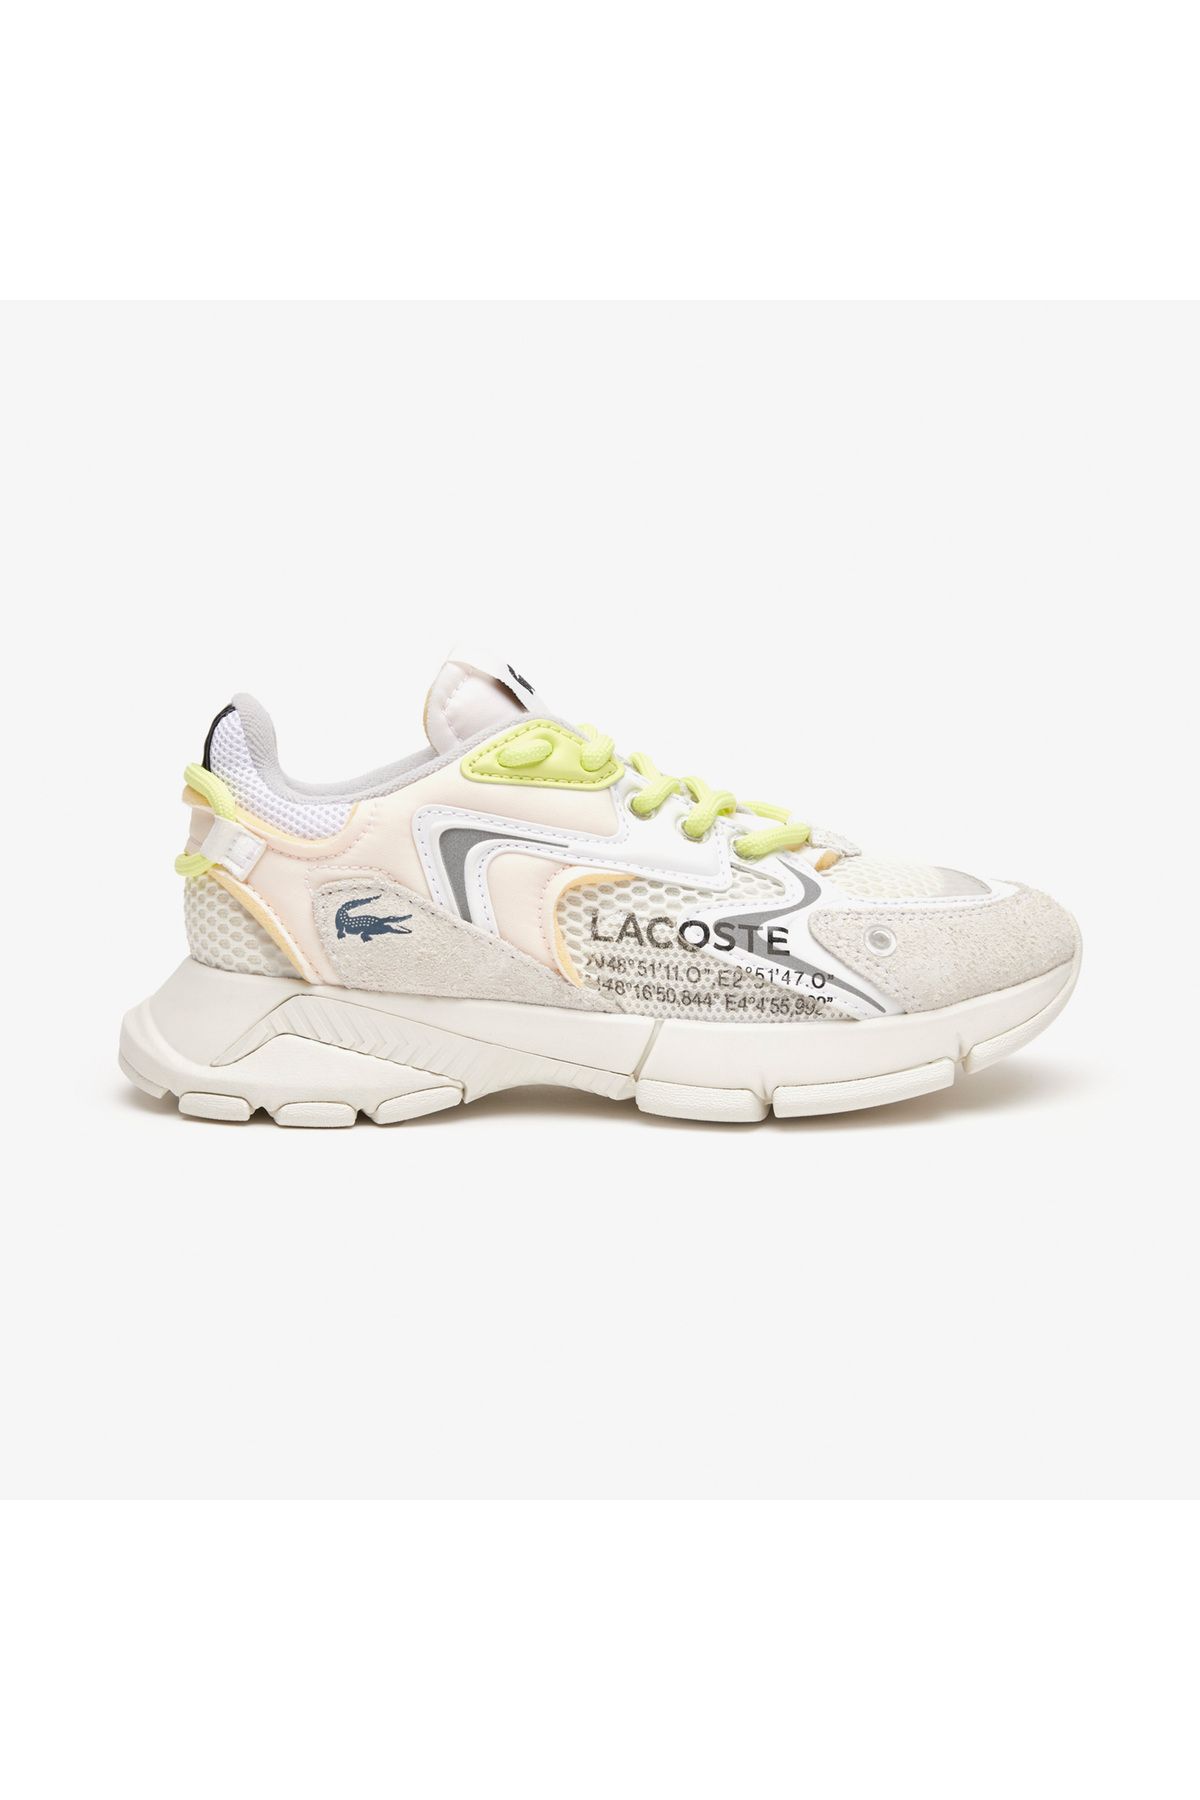 Lacoste Sport L003 Neo Kadın Beyaz Sneaker